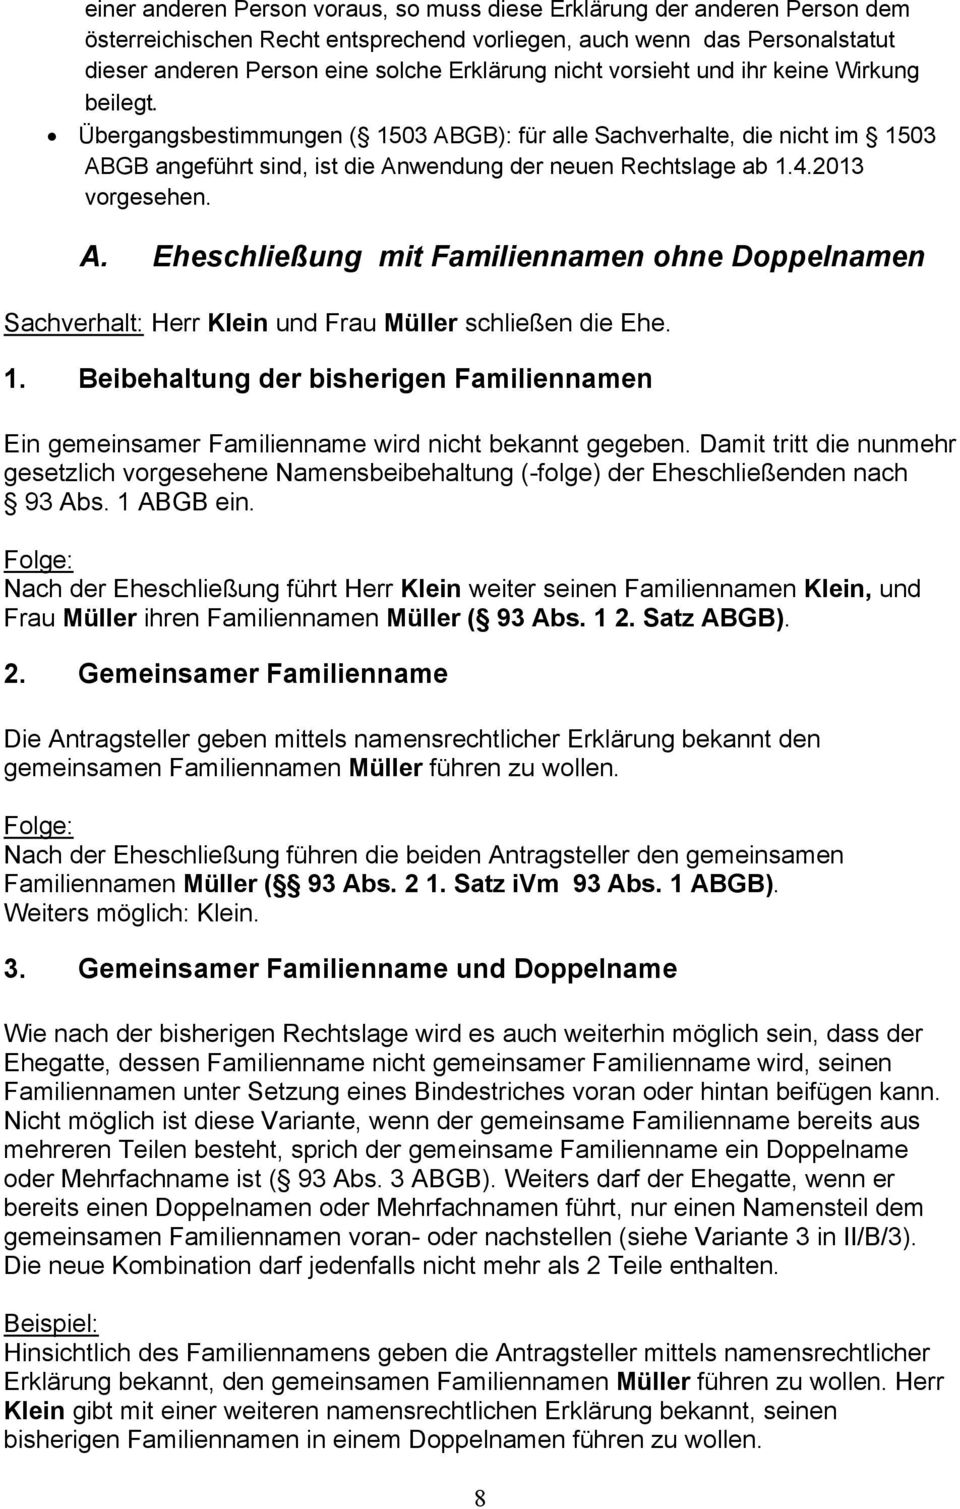 2013 vorgesehen. A. Eheschließung mit Familiennamen ohne Doppelnamen Sachverhalt: Herr Klein und Frau Müller schließen die Ehe. 1.